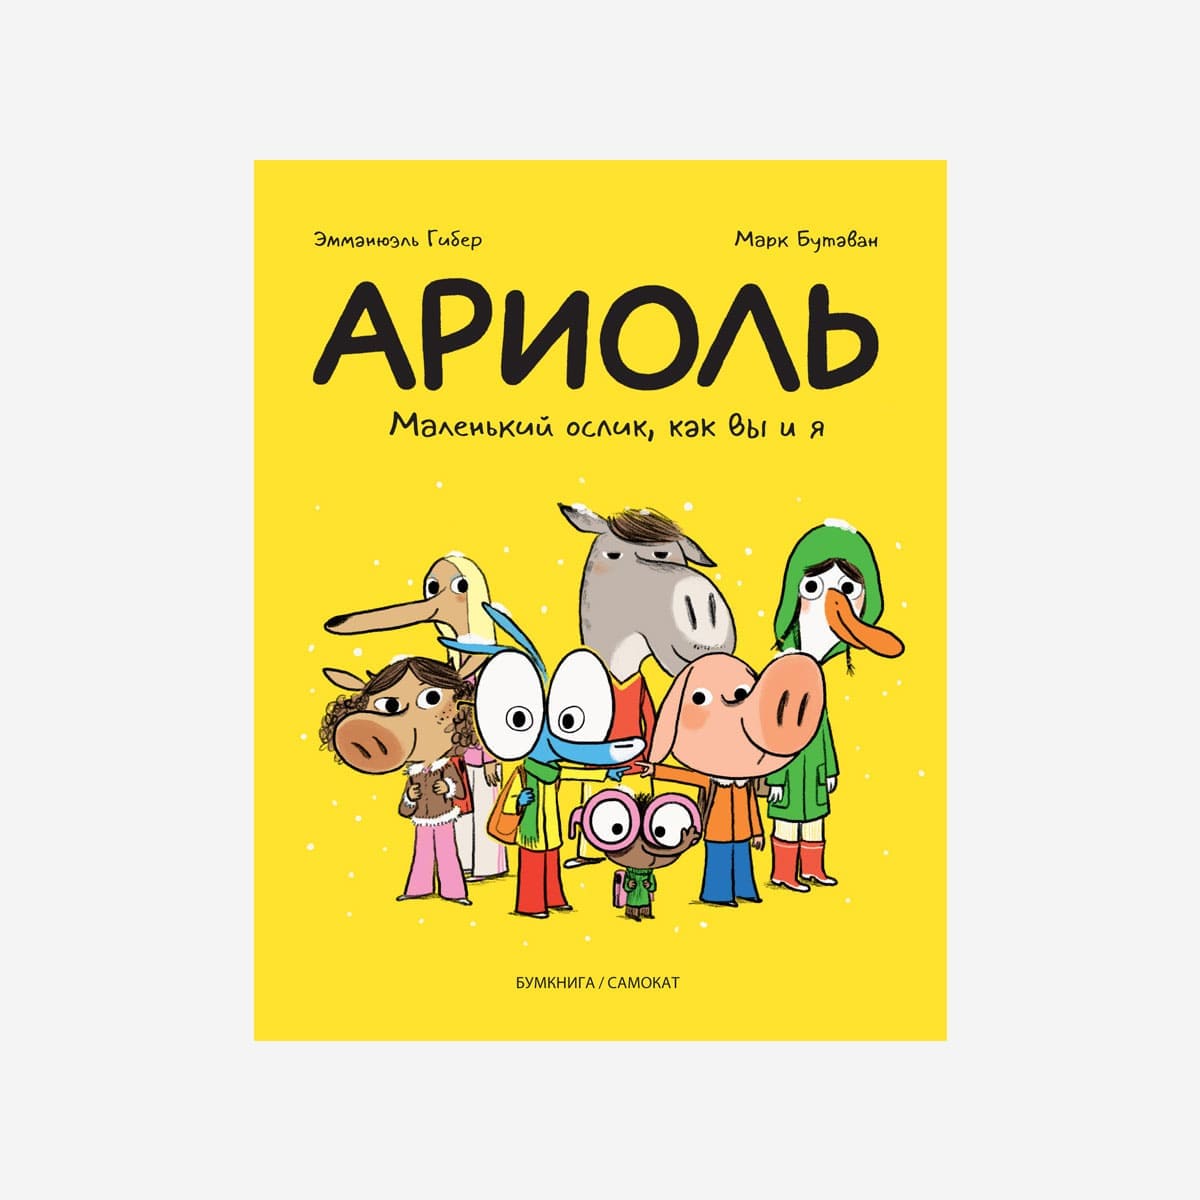 Иллюстратор Марк Бутаван представил в Москве комиксы про ослика Ариоля